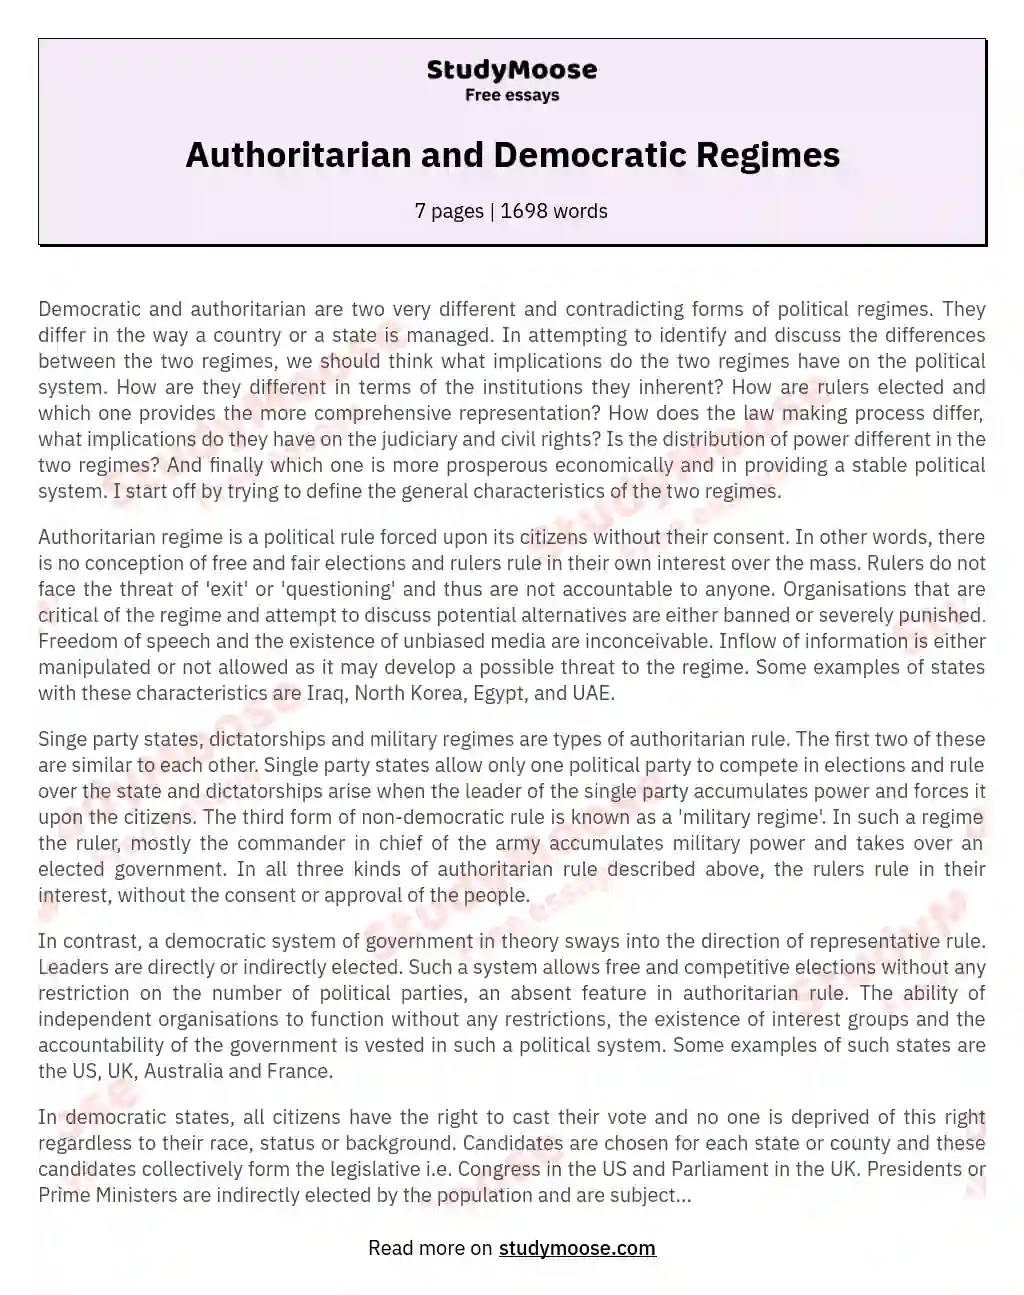 Authoritarian and Democratic Regimes essay